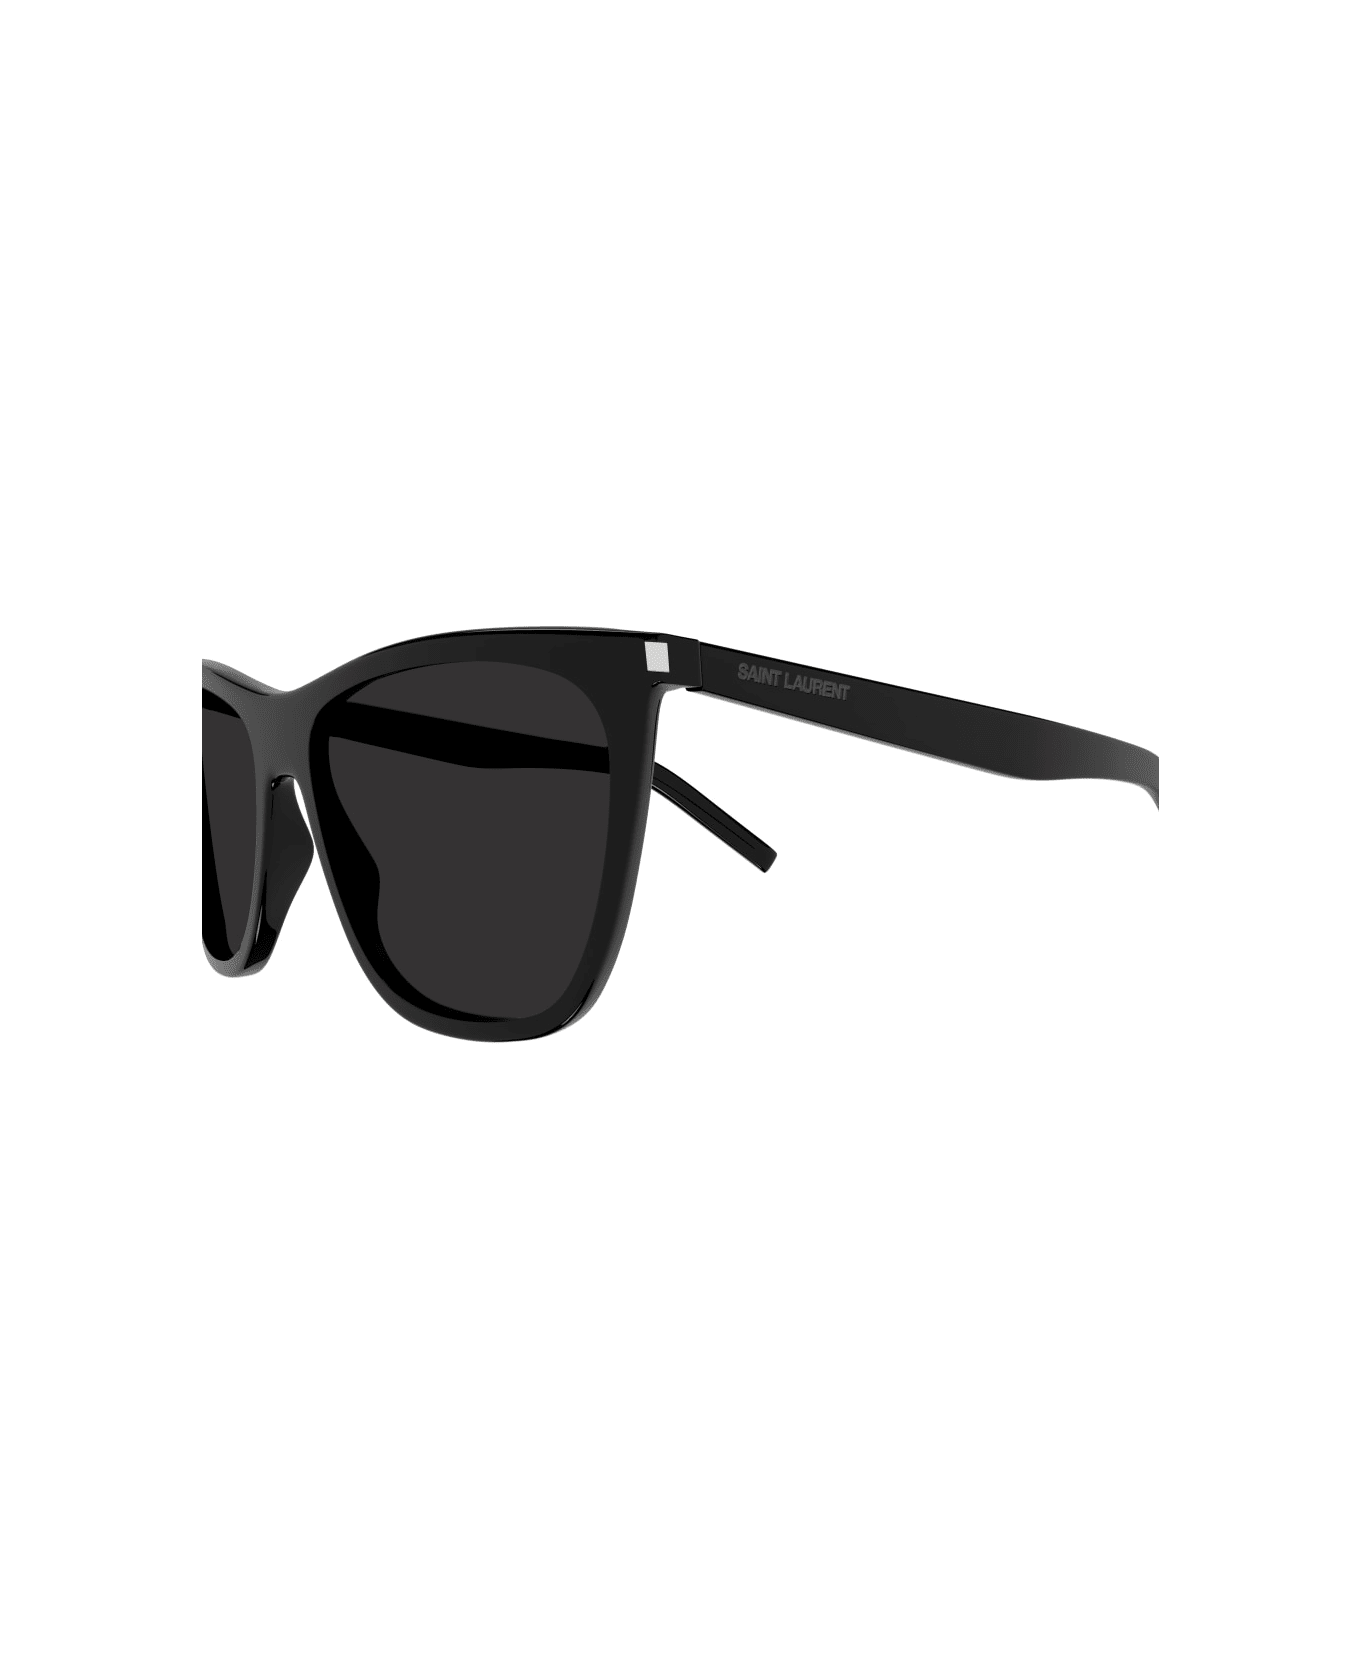 Saint Laurent Eyewear SL 526 Sunglasses - Black Black Black